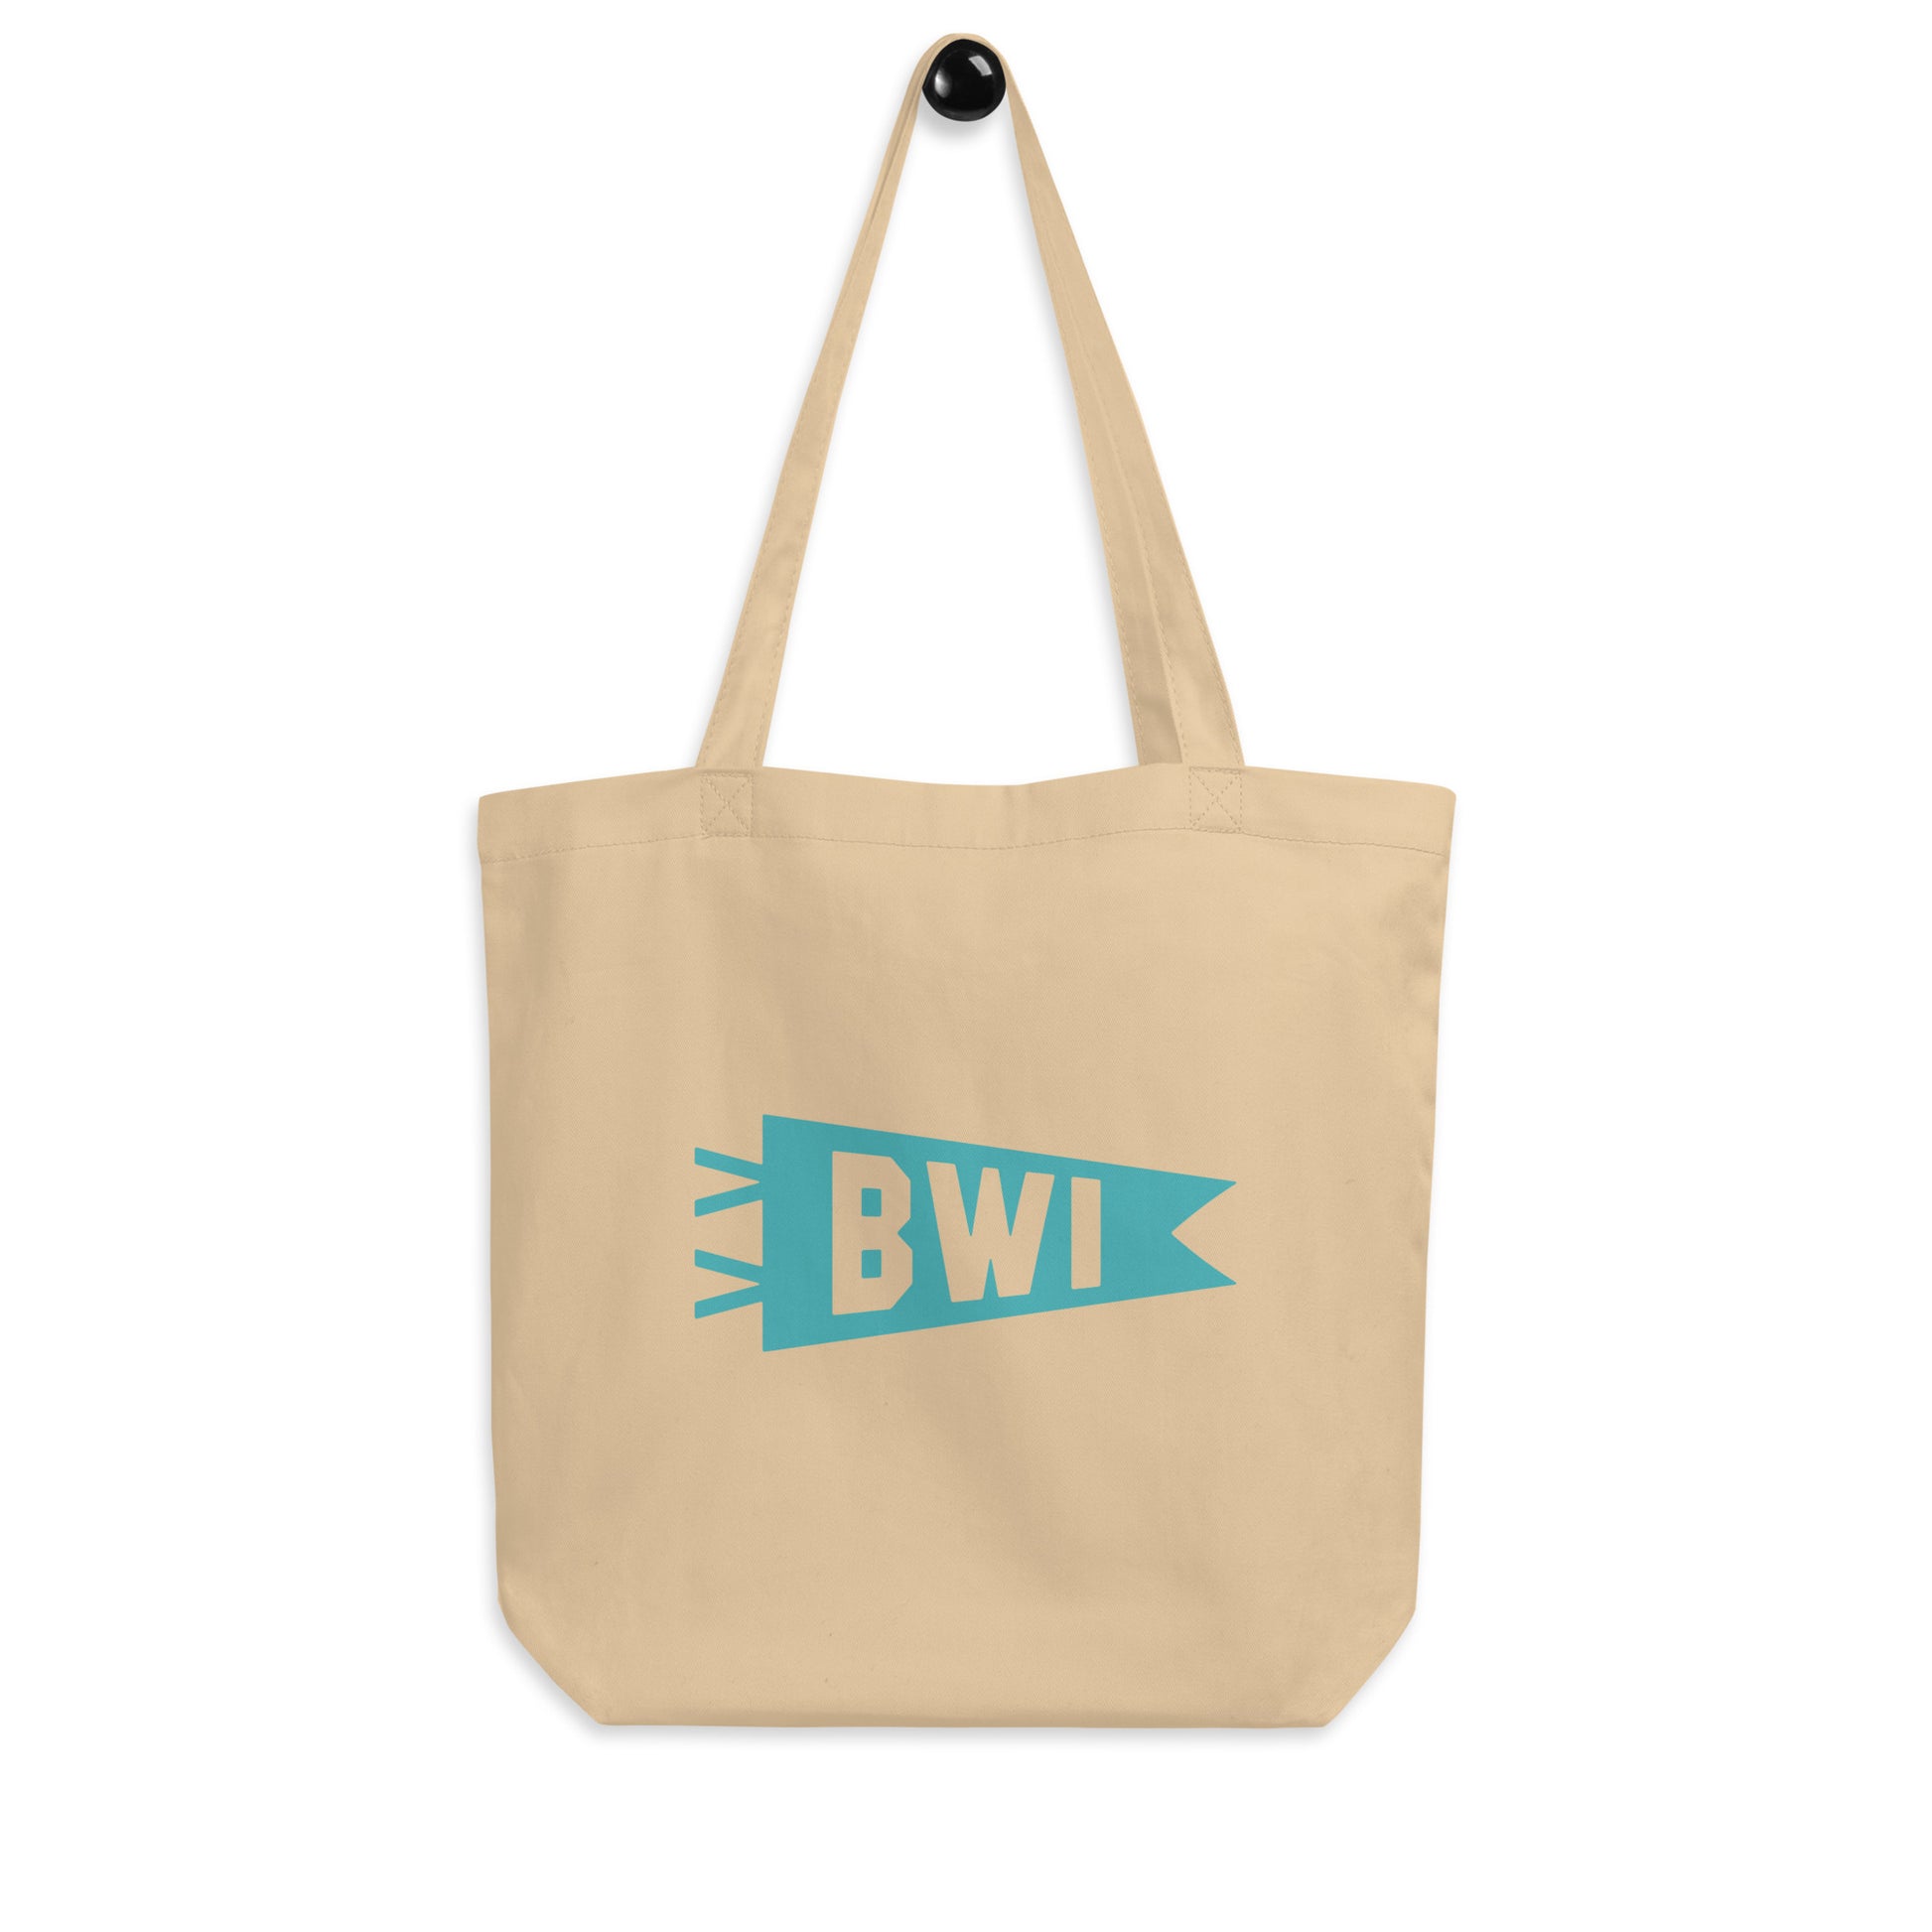 Cool Travel Gift Organic Tote Bag - Viking Blue • BWI Baltimore • YHM Designs - Image 04